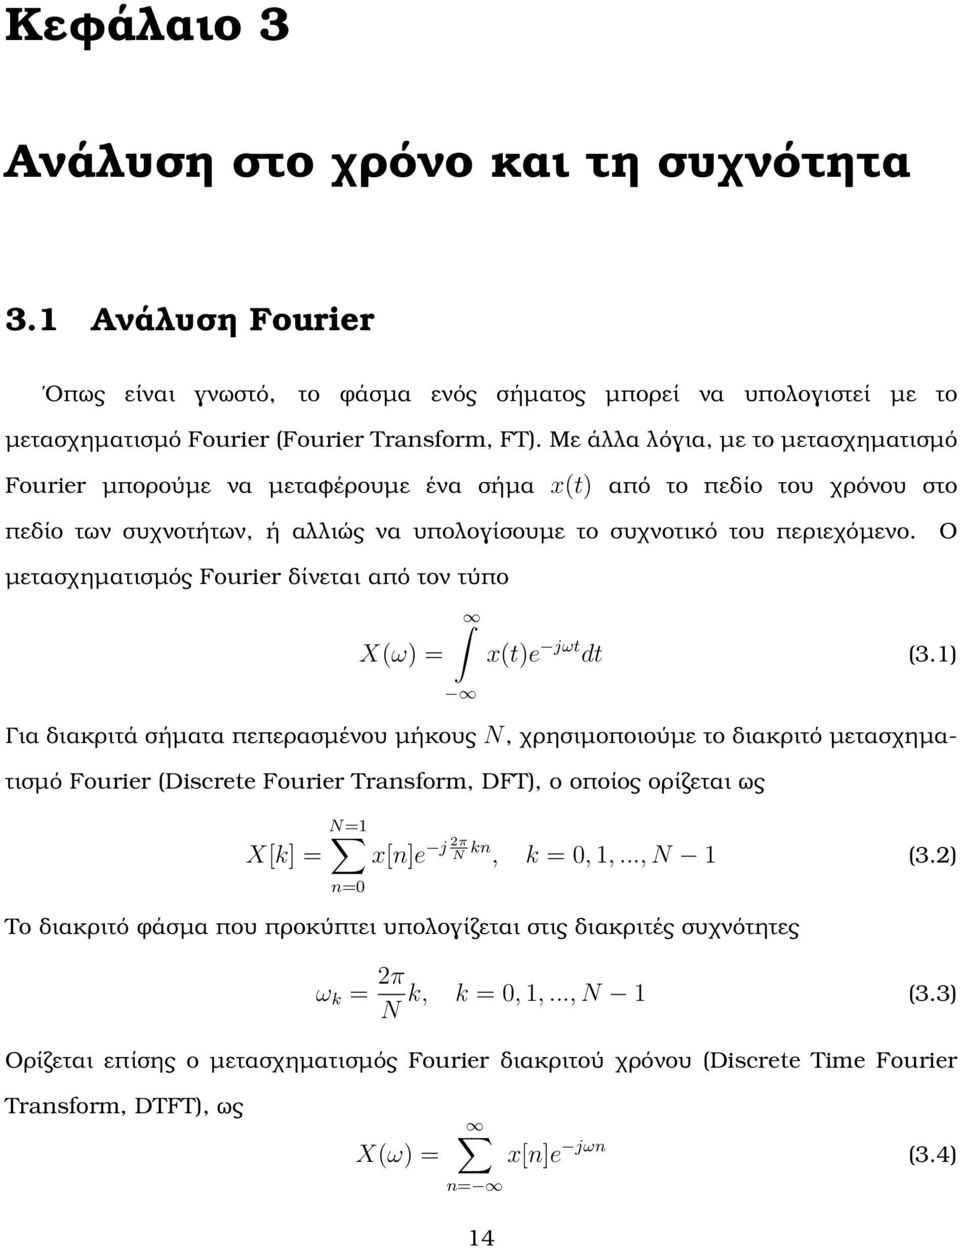 Ο µετασχηµατισµός Fourier δίνεται από τον τύπο X(ω) = x(t)e jωt dt (3.